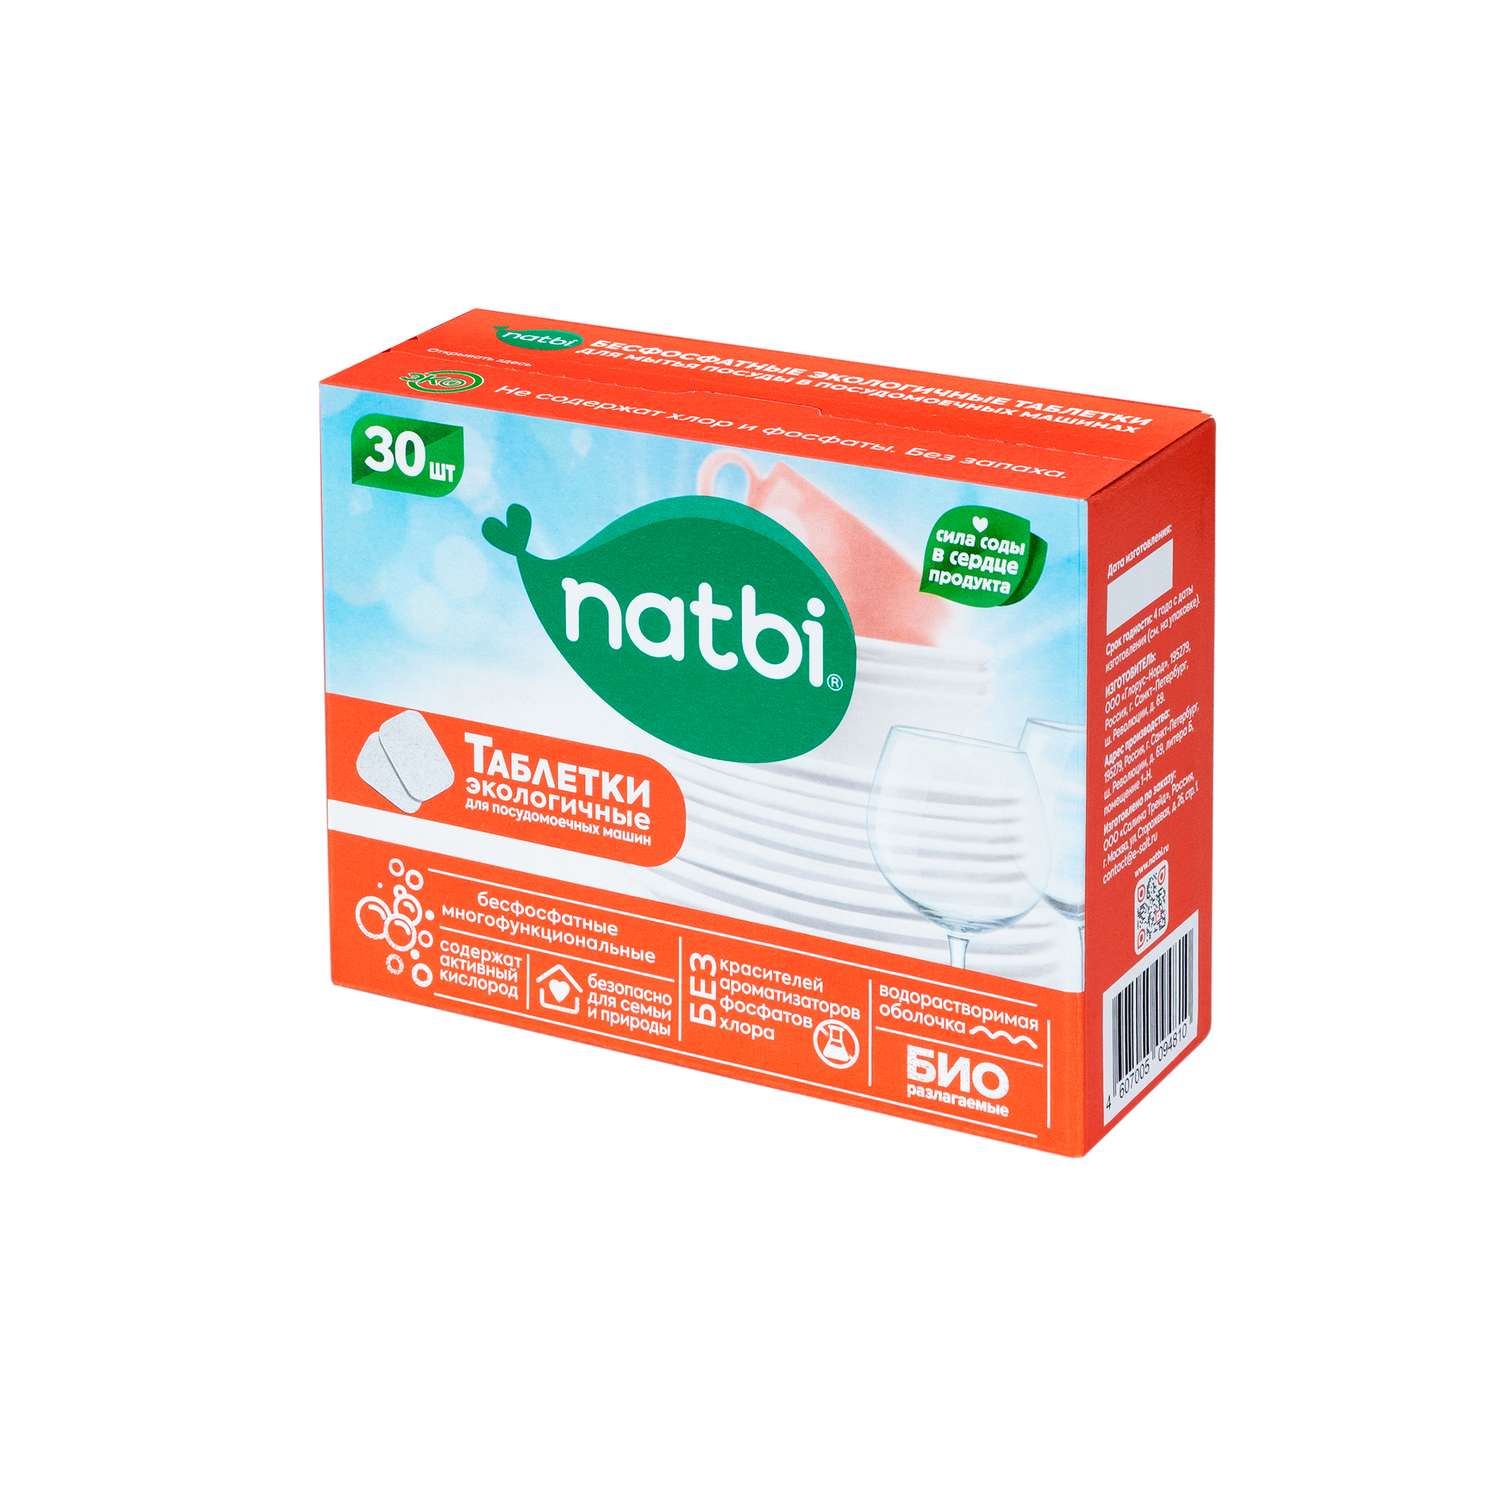 Таблетки NATBI Бесфосфатные экологичные для мытья посуды в посудомоечных машинах 30 шт - фото 1